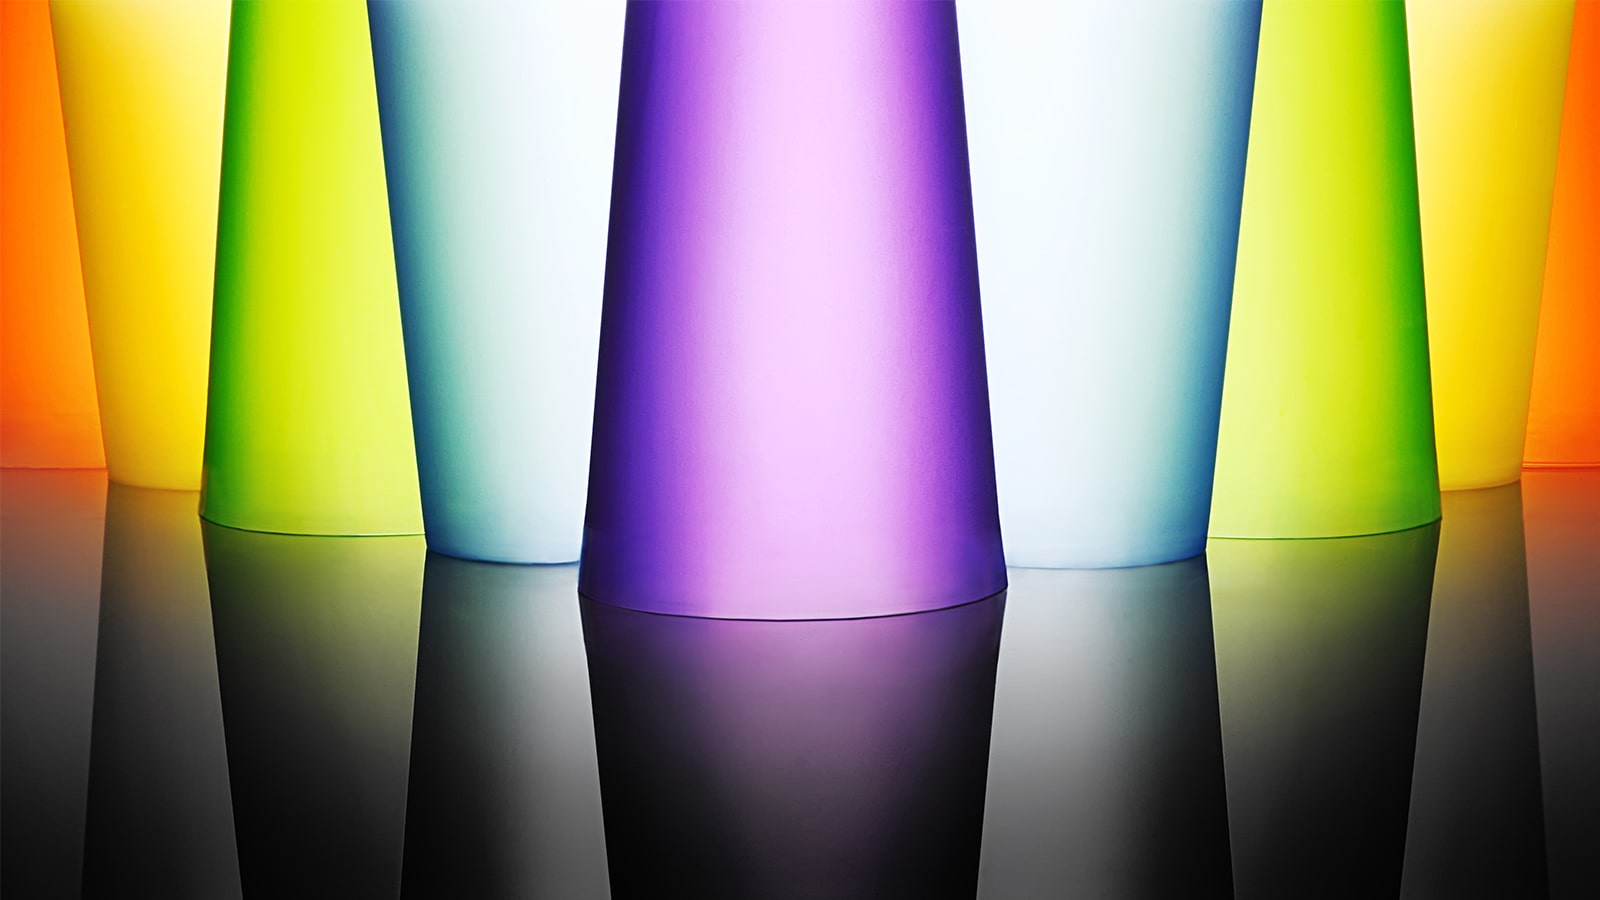 תמונה של כוסות זכוכית מבריקות וצבעוניות.